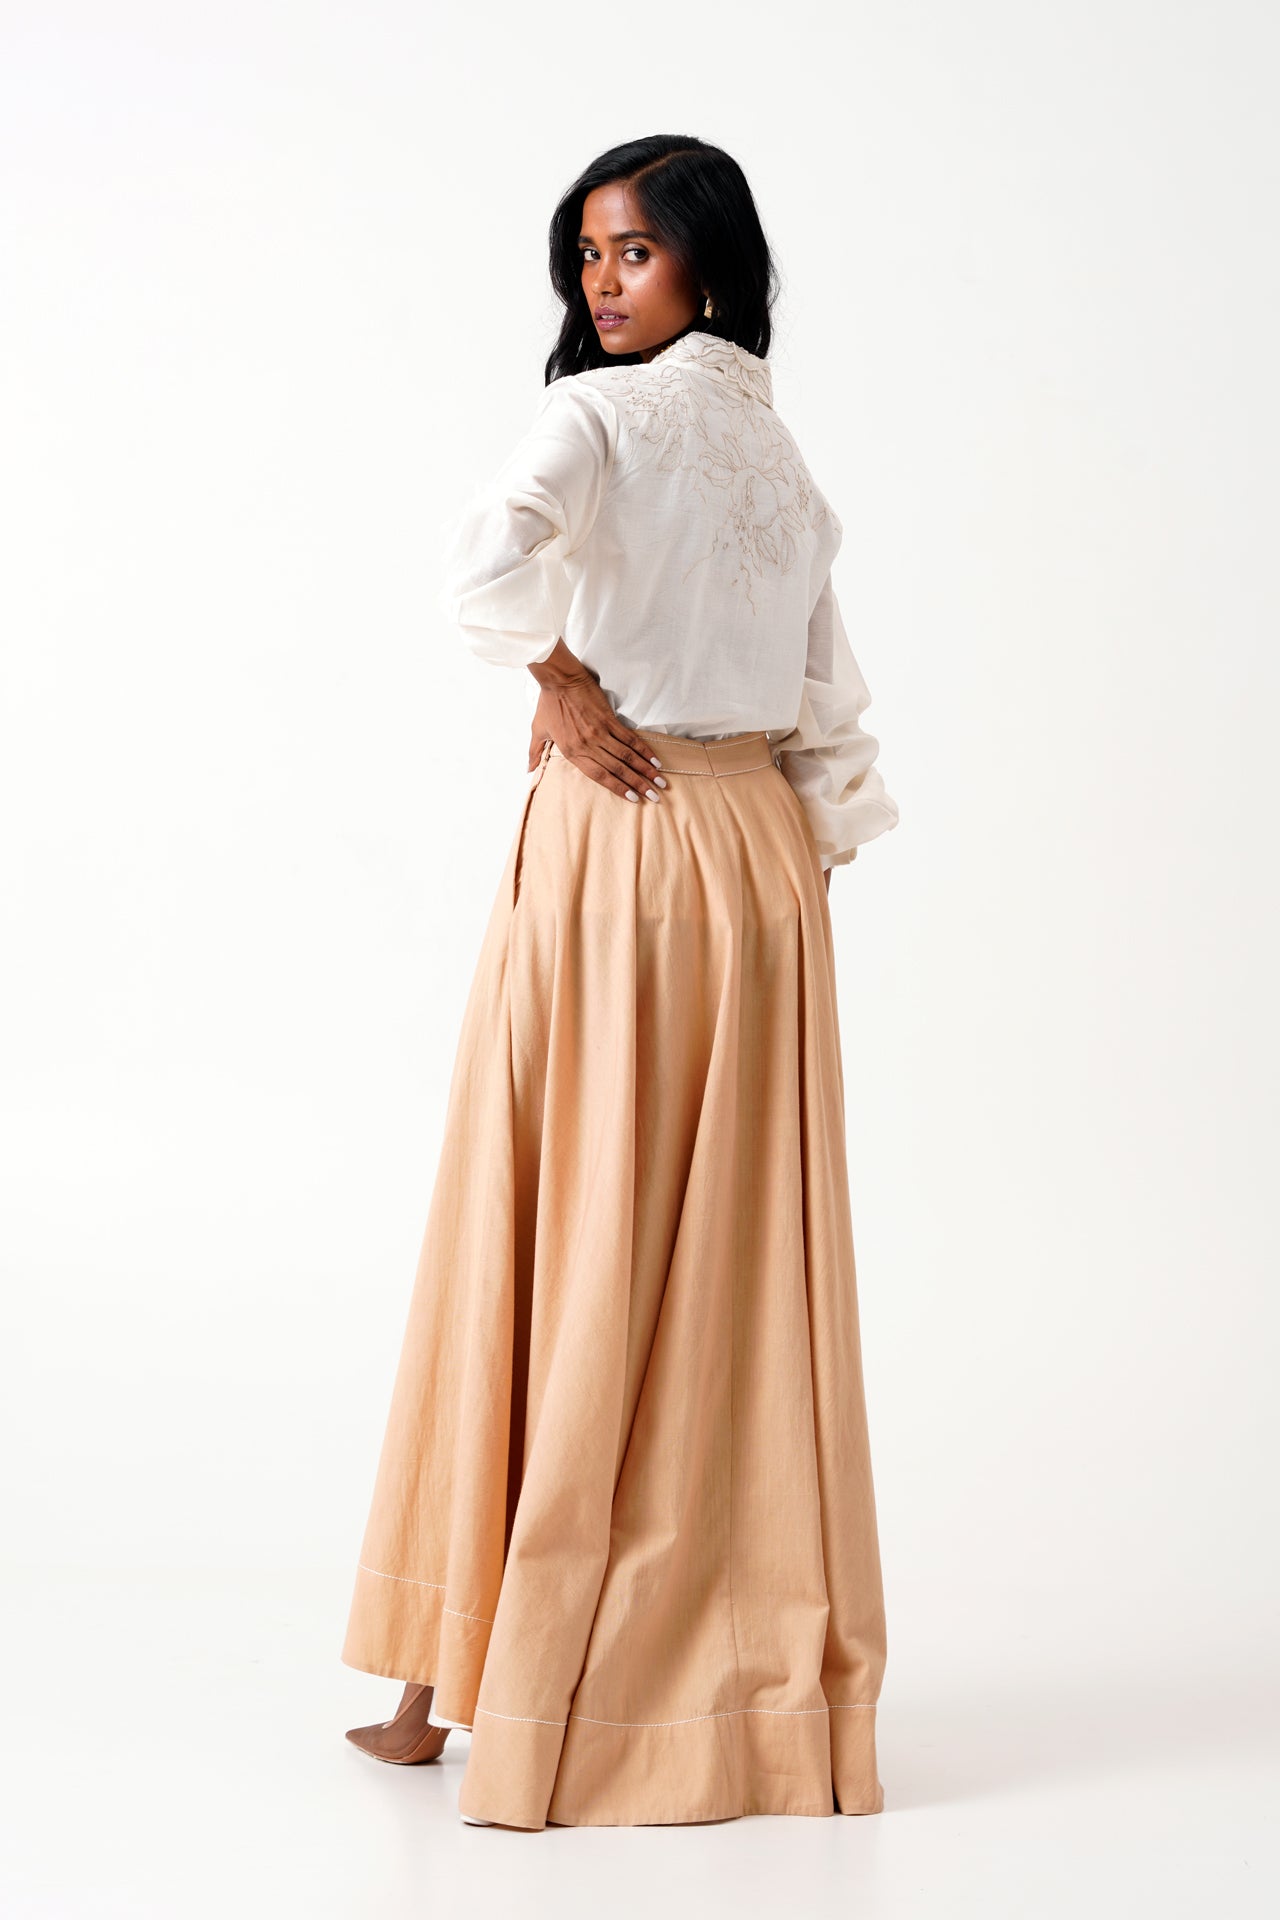 Latte Jena - Swirl Skirt Set of 2